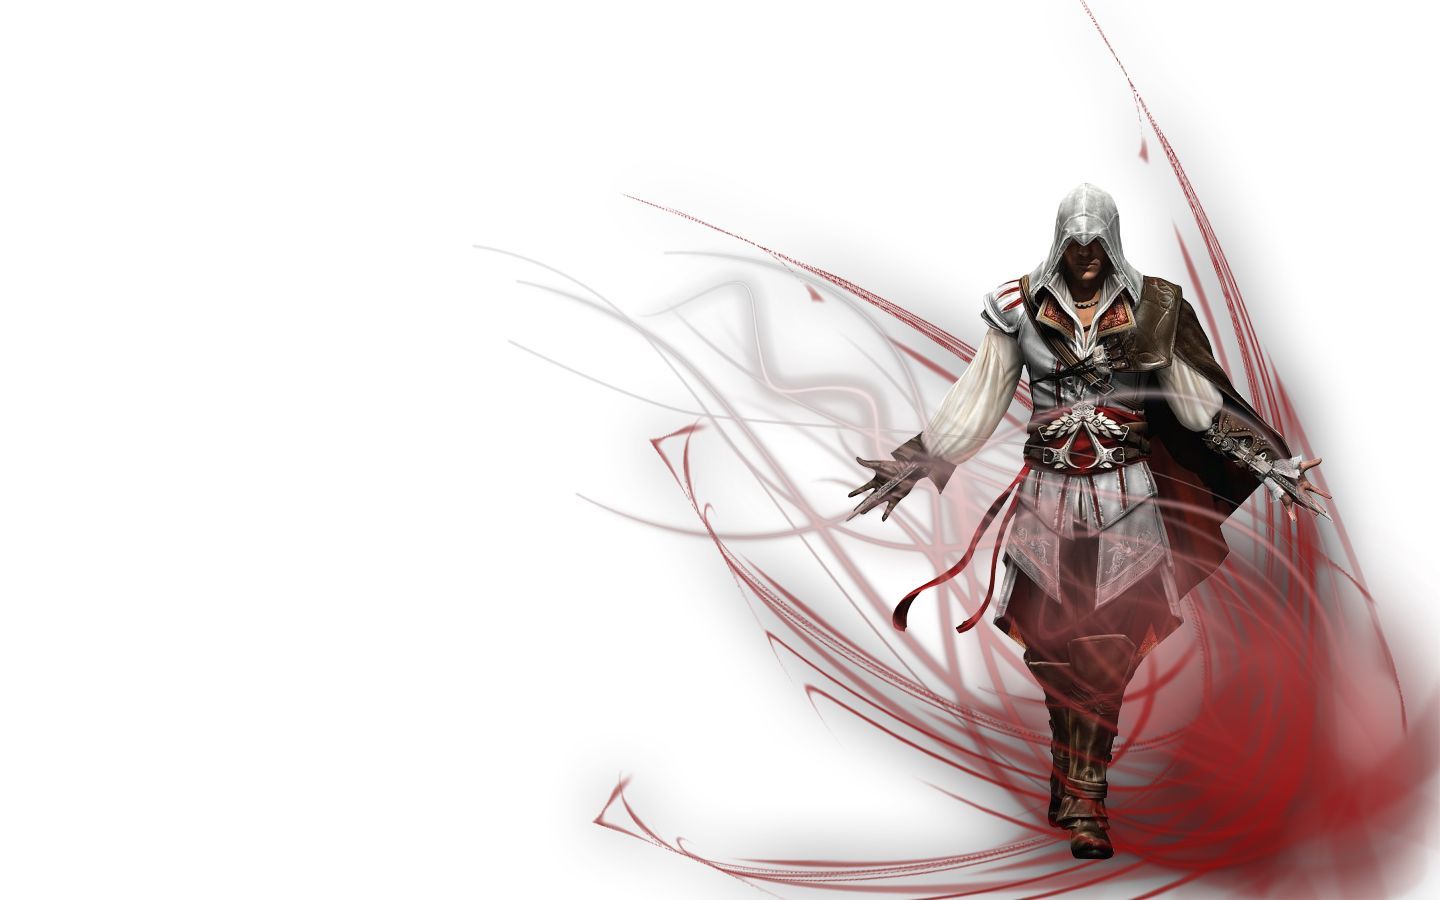 Assassins Creed Wallpaper | 1440x900 | ID:18417